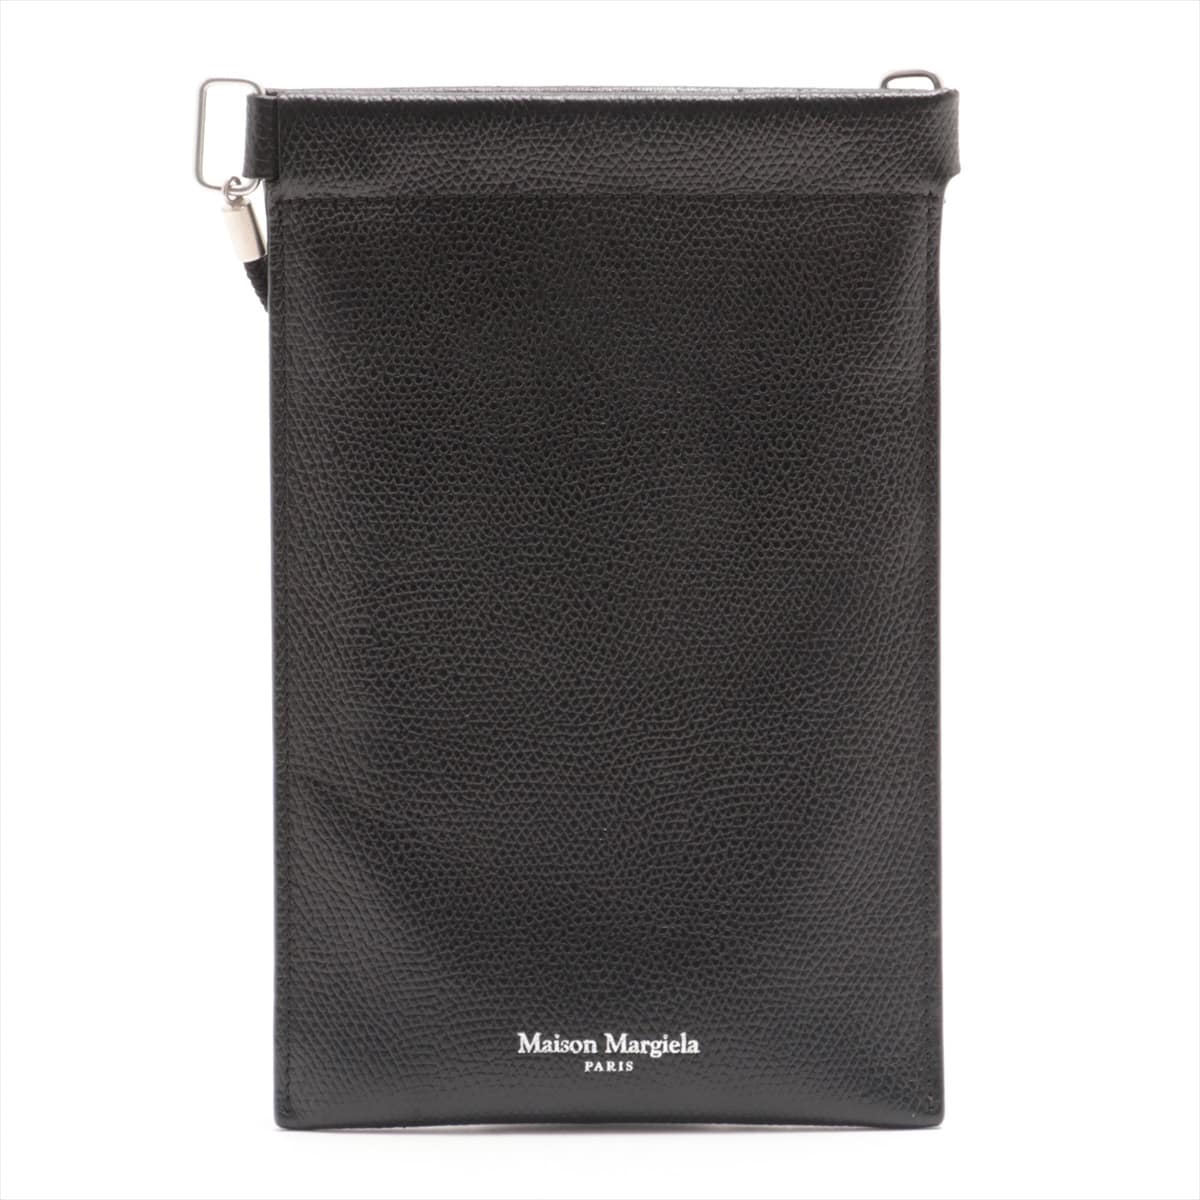 Maison Margiela Leather Shoulder bag Black document holder